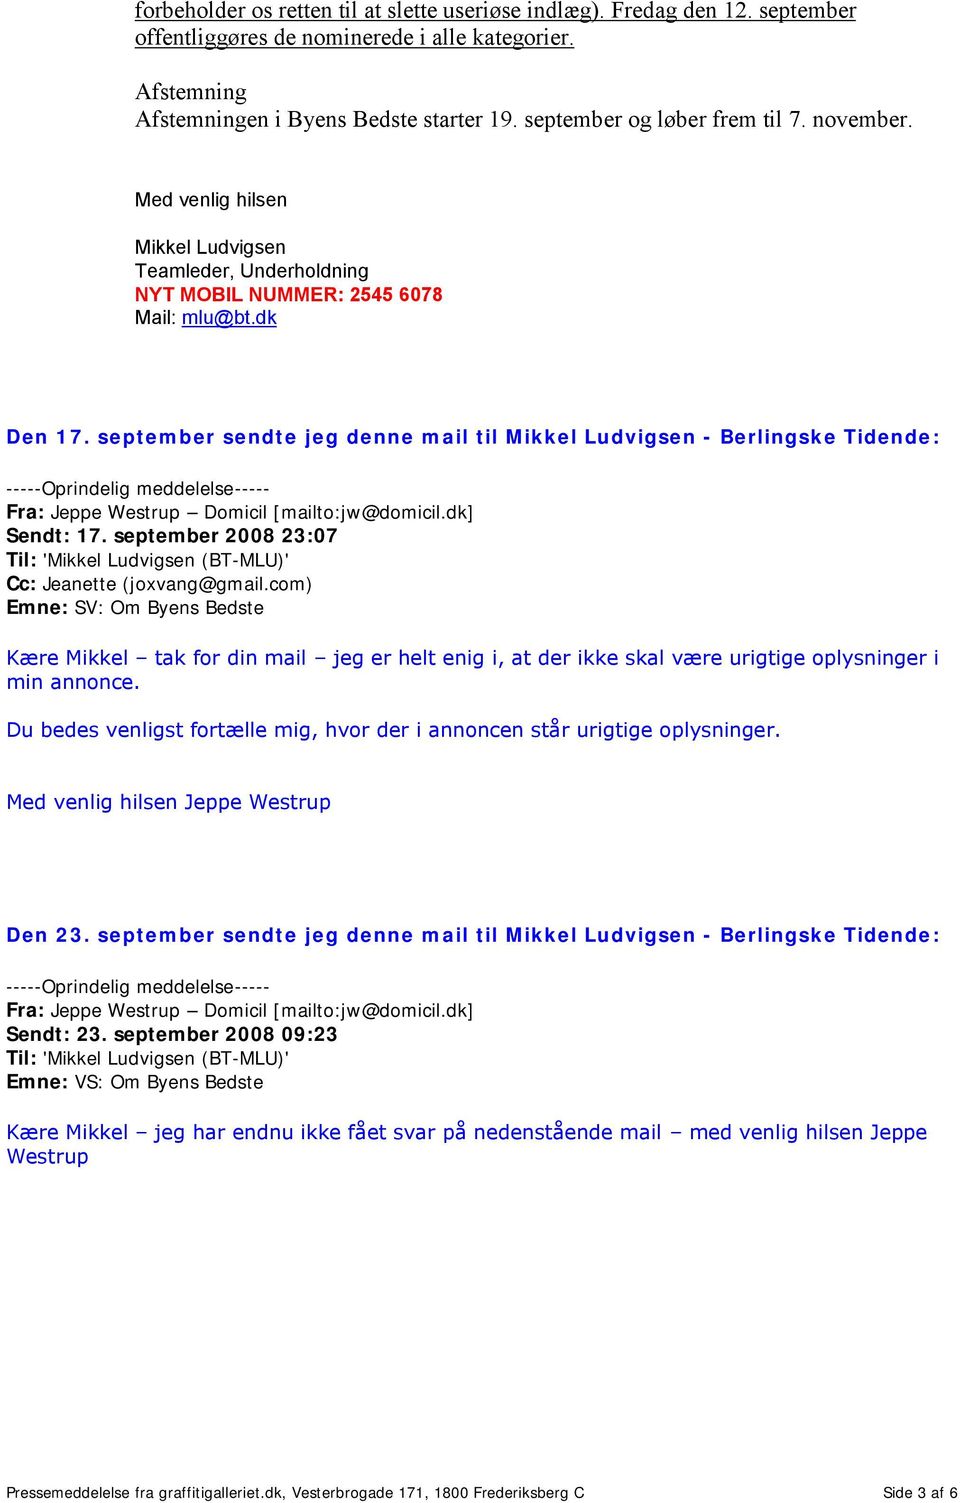 september sendte jeg denne mail til Mikkel Ludvigsen - Berlingske Tidende: Sendt: 17. september 2008 23:07 Til: 'Mikkel Ludvigsen (BT-MLU)' Cc: Jeanette (joxvang@gmail.